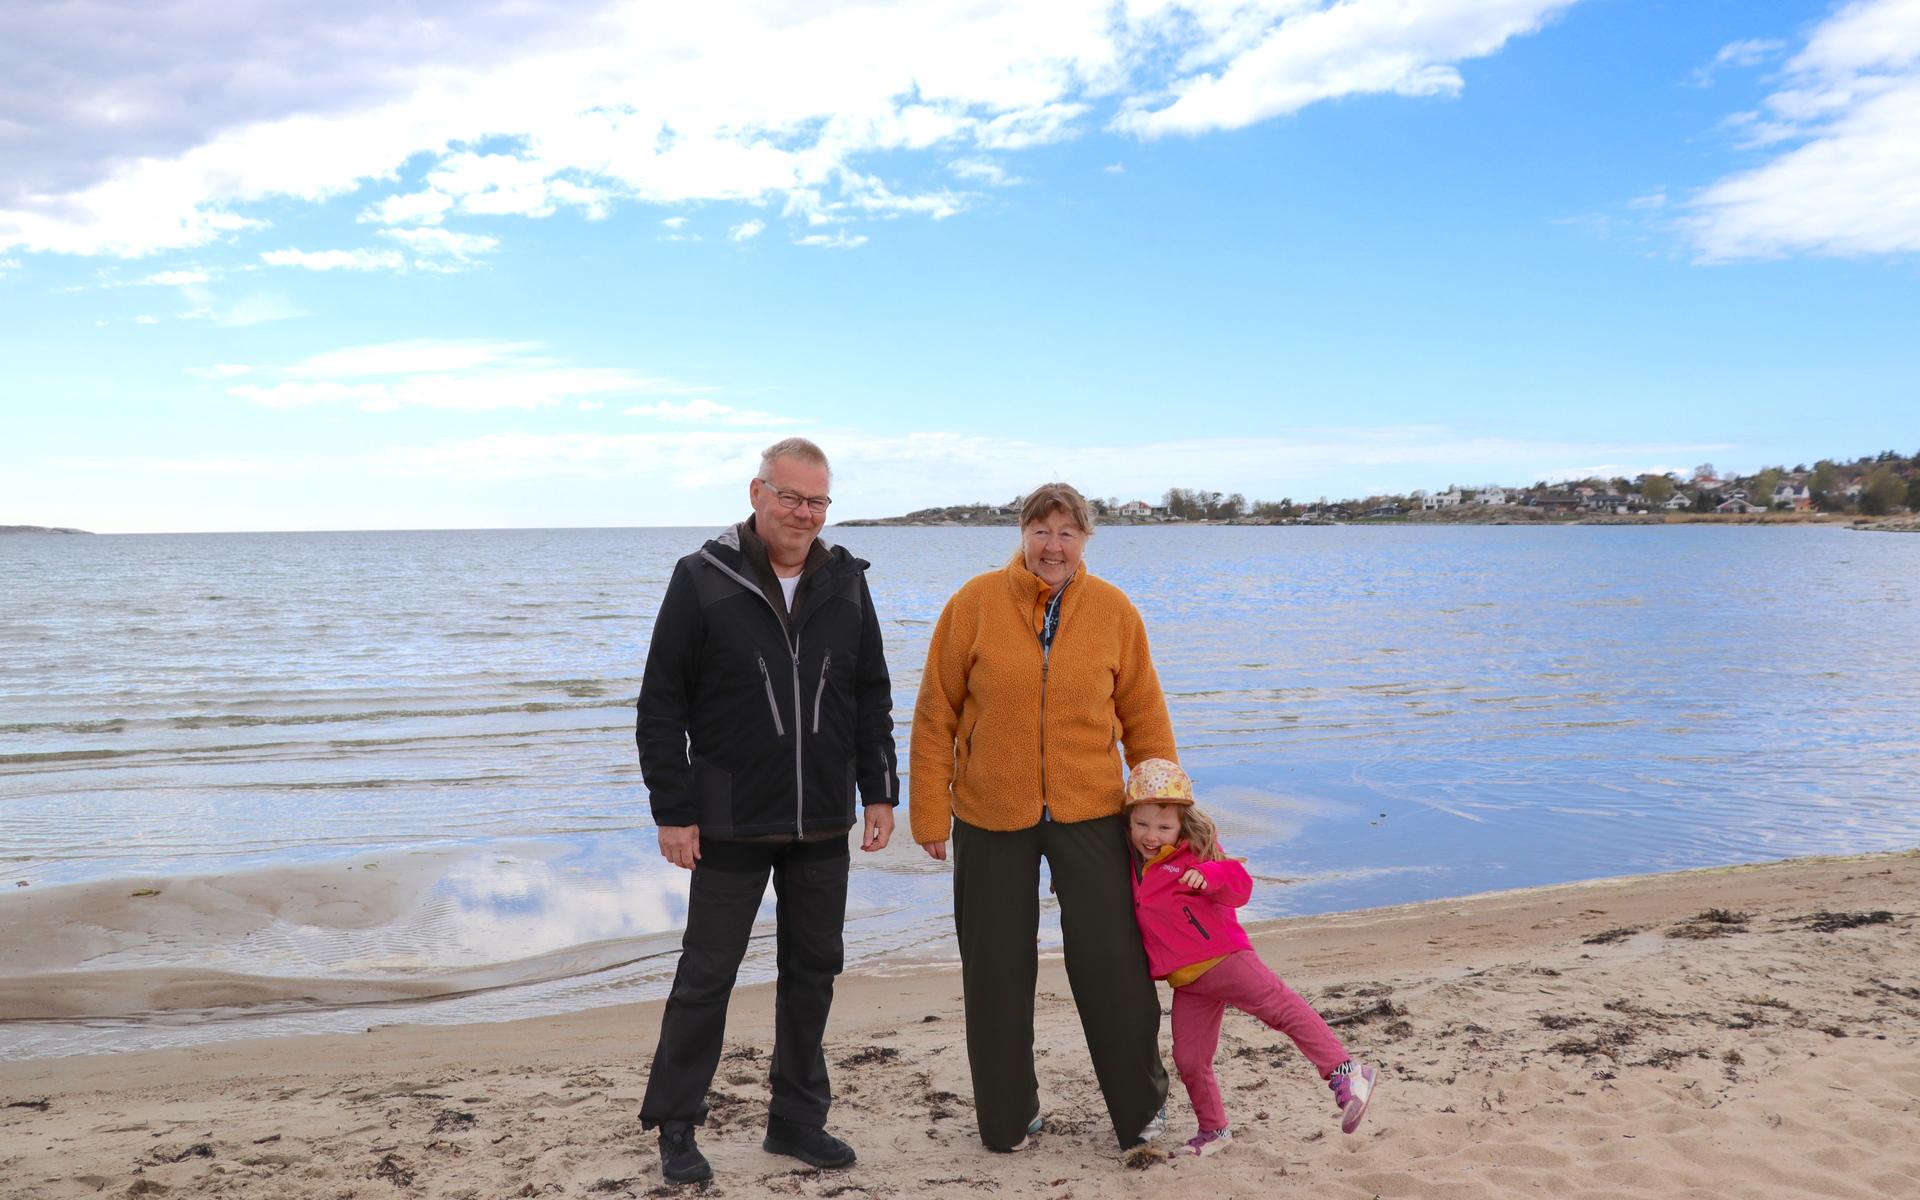 Eva och Raimo Johansson från Ätran med barnbarnet Ruth Eriksson, 4 år. De var på campingen förra året och föll direkt. De är inte så förvånade över att badkvalitén är dålig. ”Att dagvattnet rinner ut direkt på stranden, sånt ser man ju annars bara utomlands”.